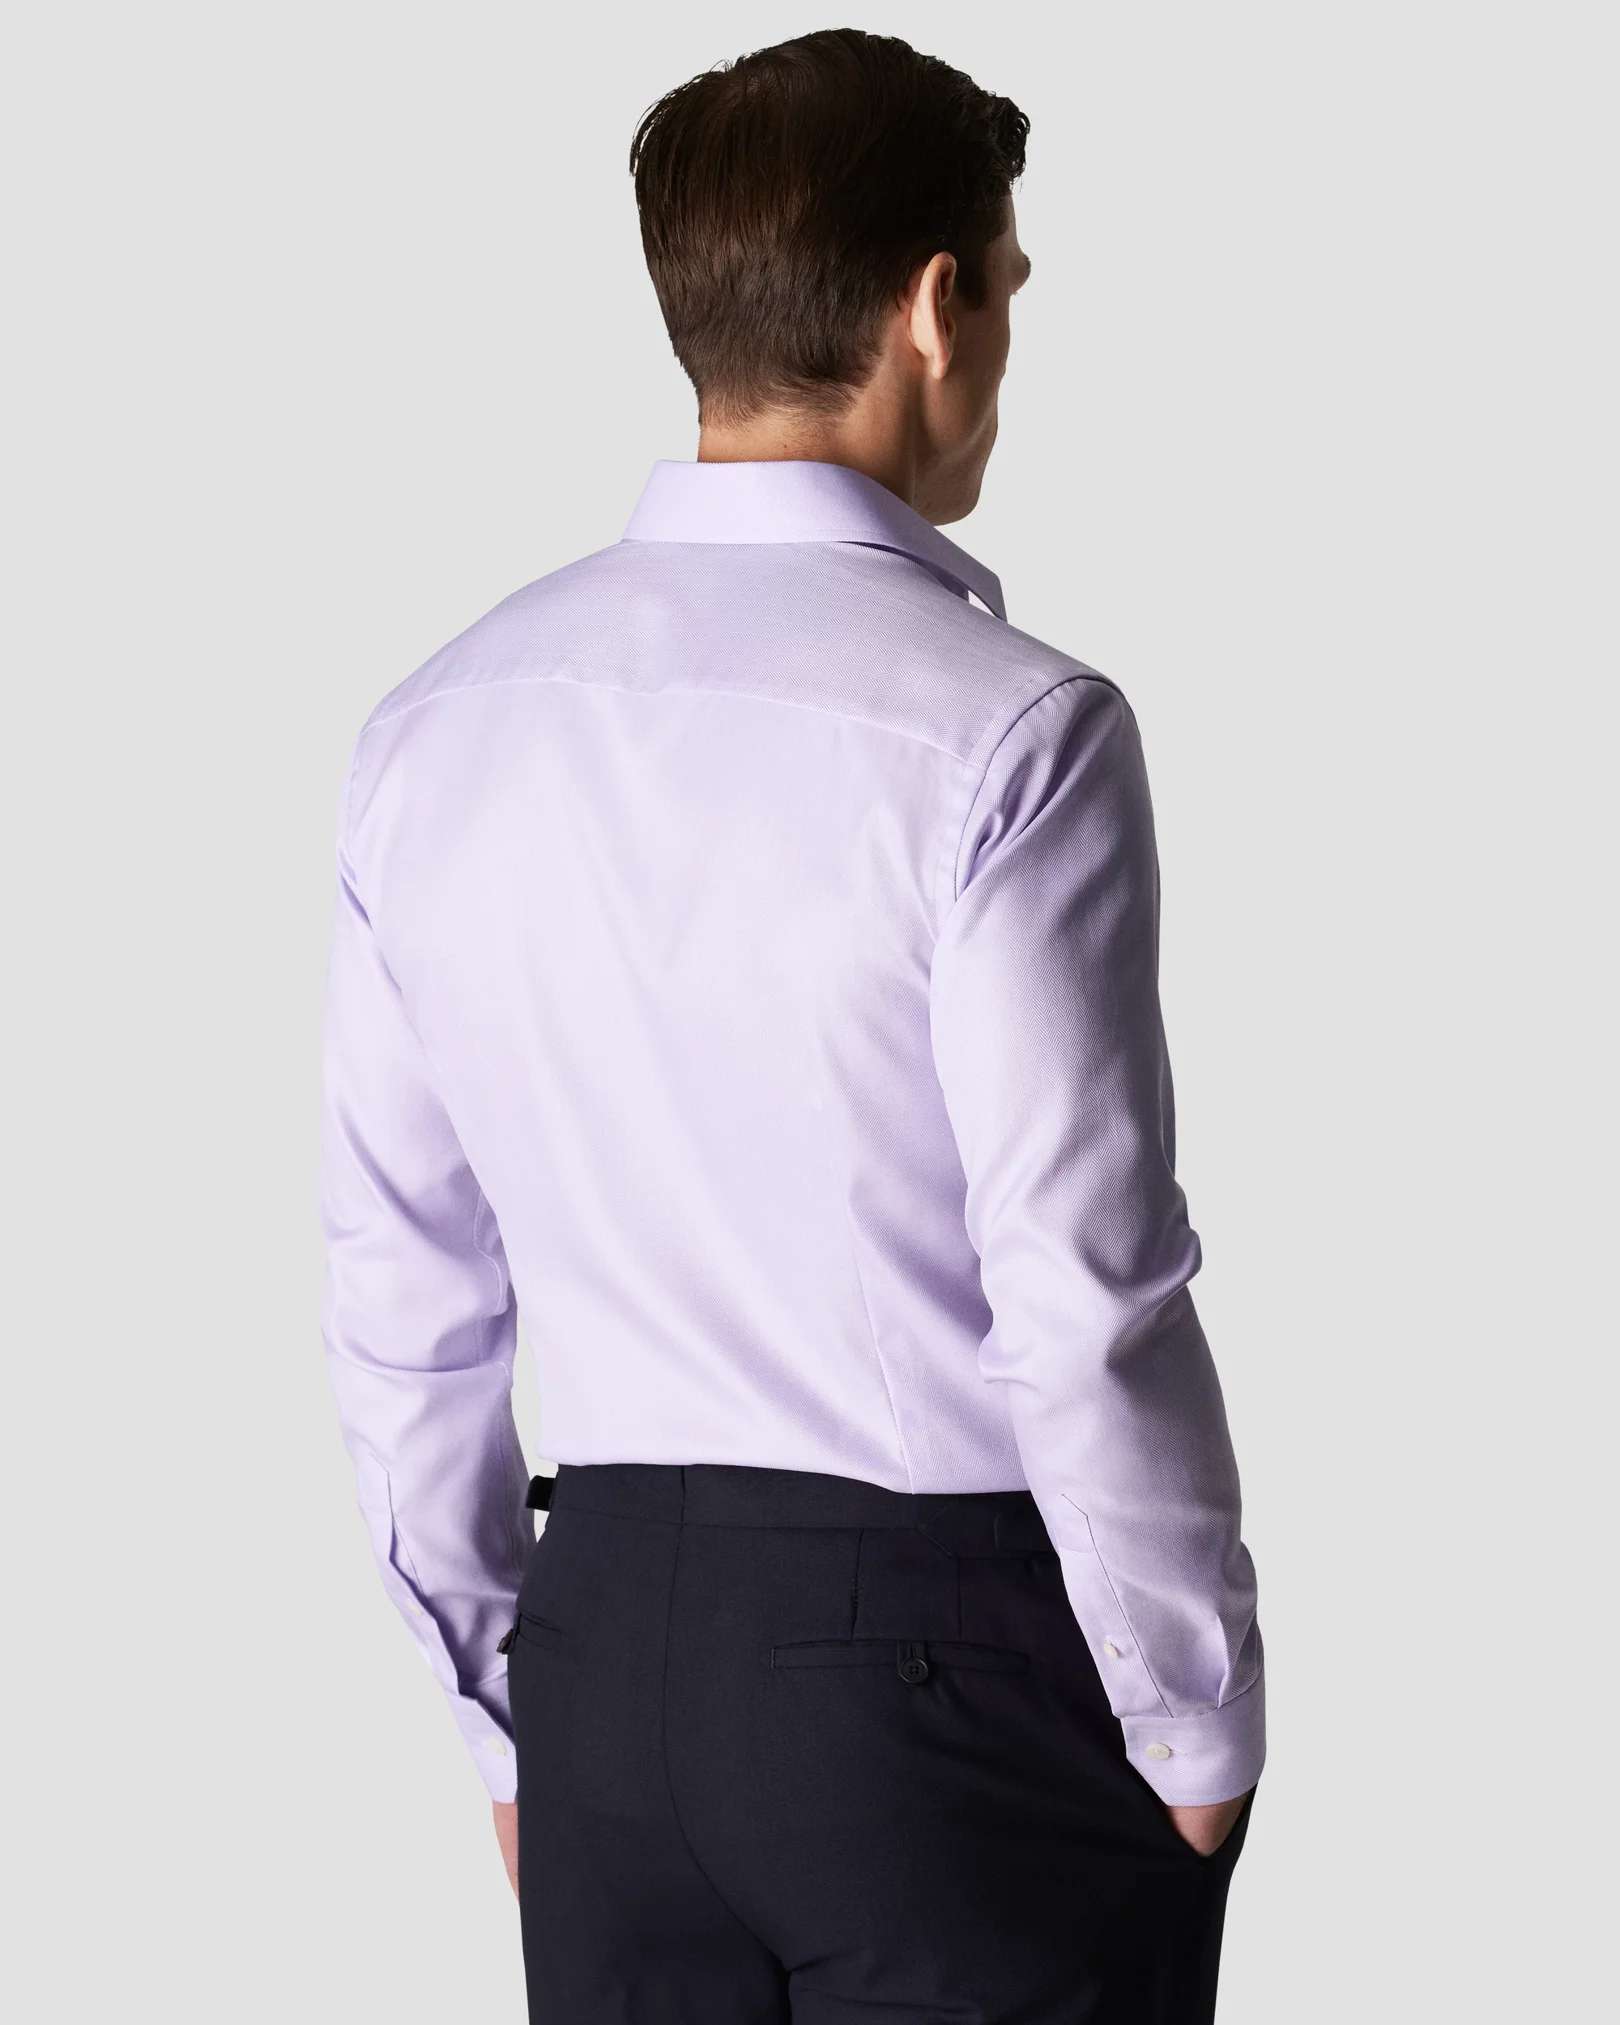 Eton - purple herringbone twill shirt